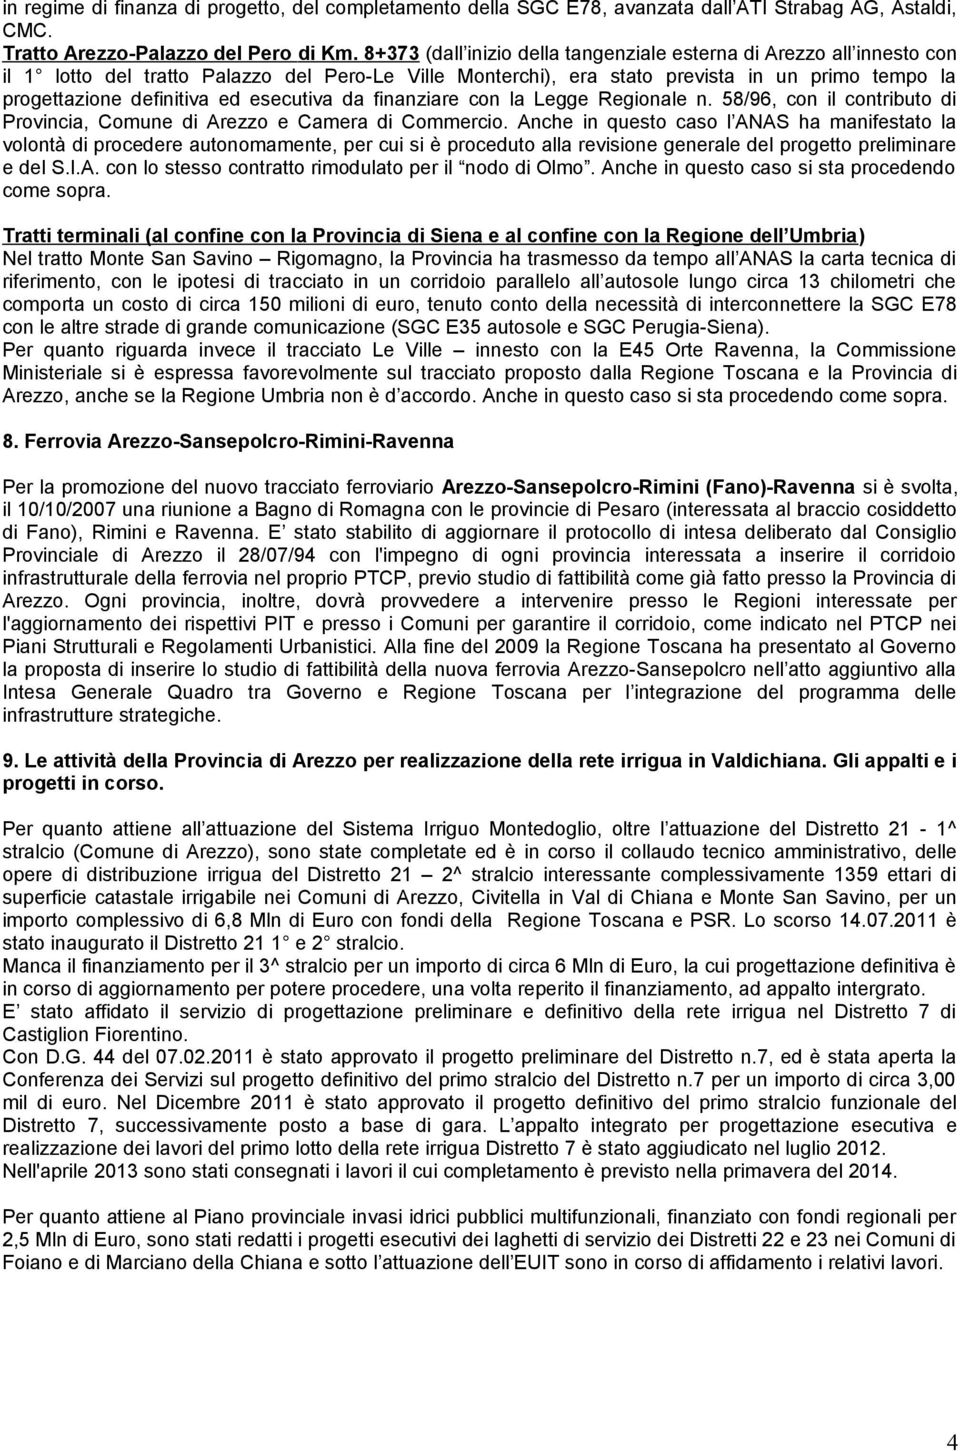 esecutiva da finanziare con la Legge Regionale n. 58/96, con il contributo di Provincia, Comune di Arezzo e Camera di Commercio.